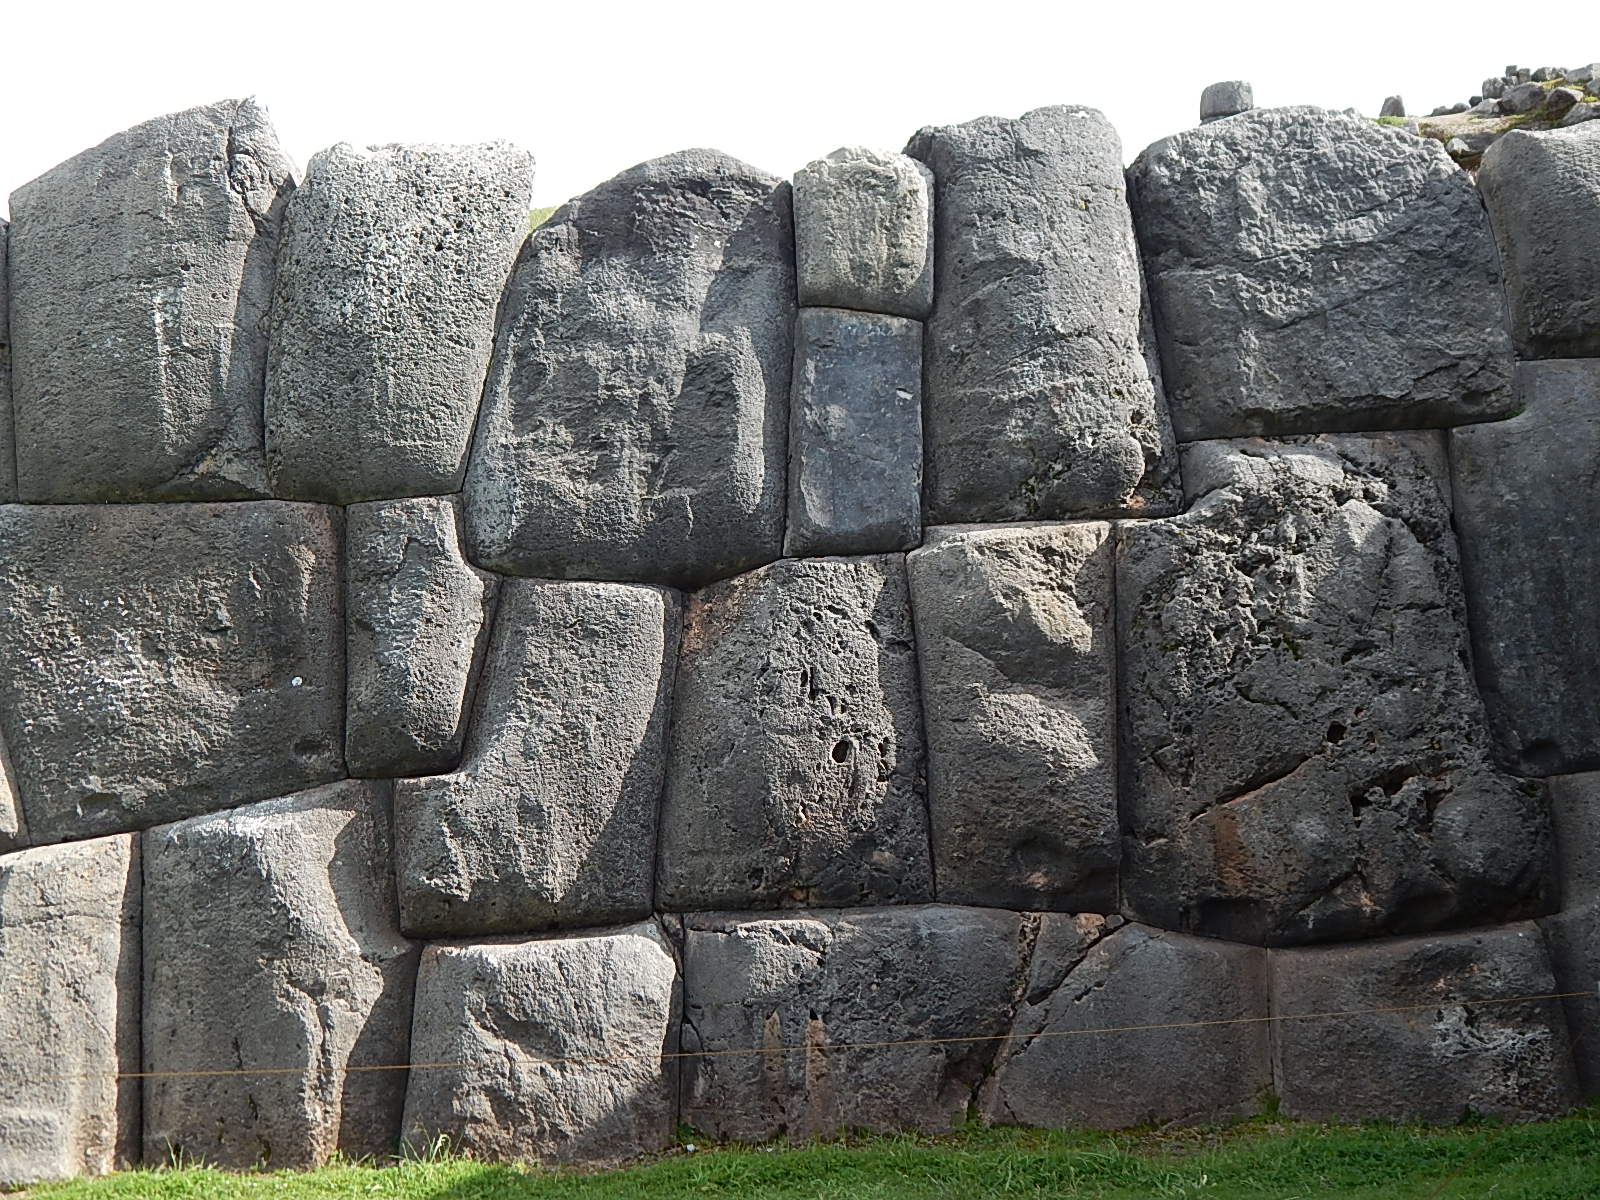 Ver Peru y maravillarse de Muros de Sacsayhuaman